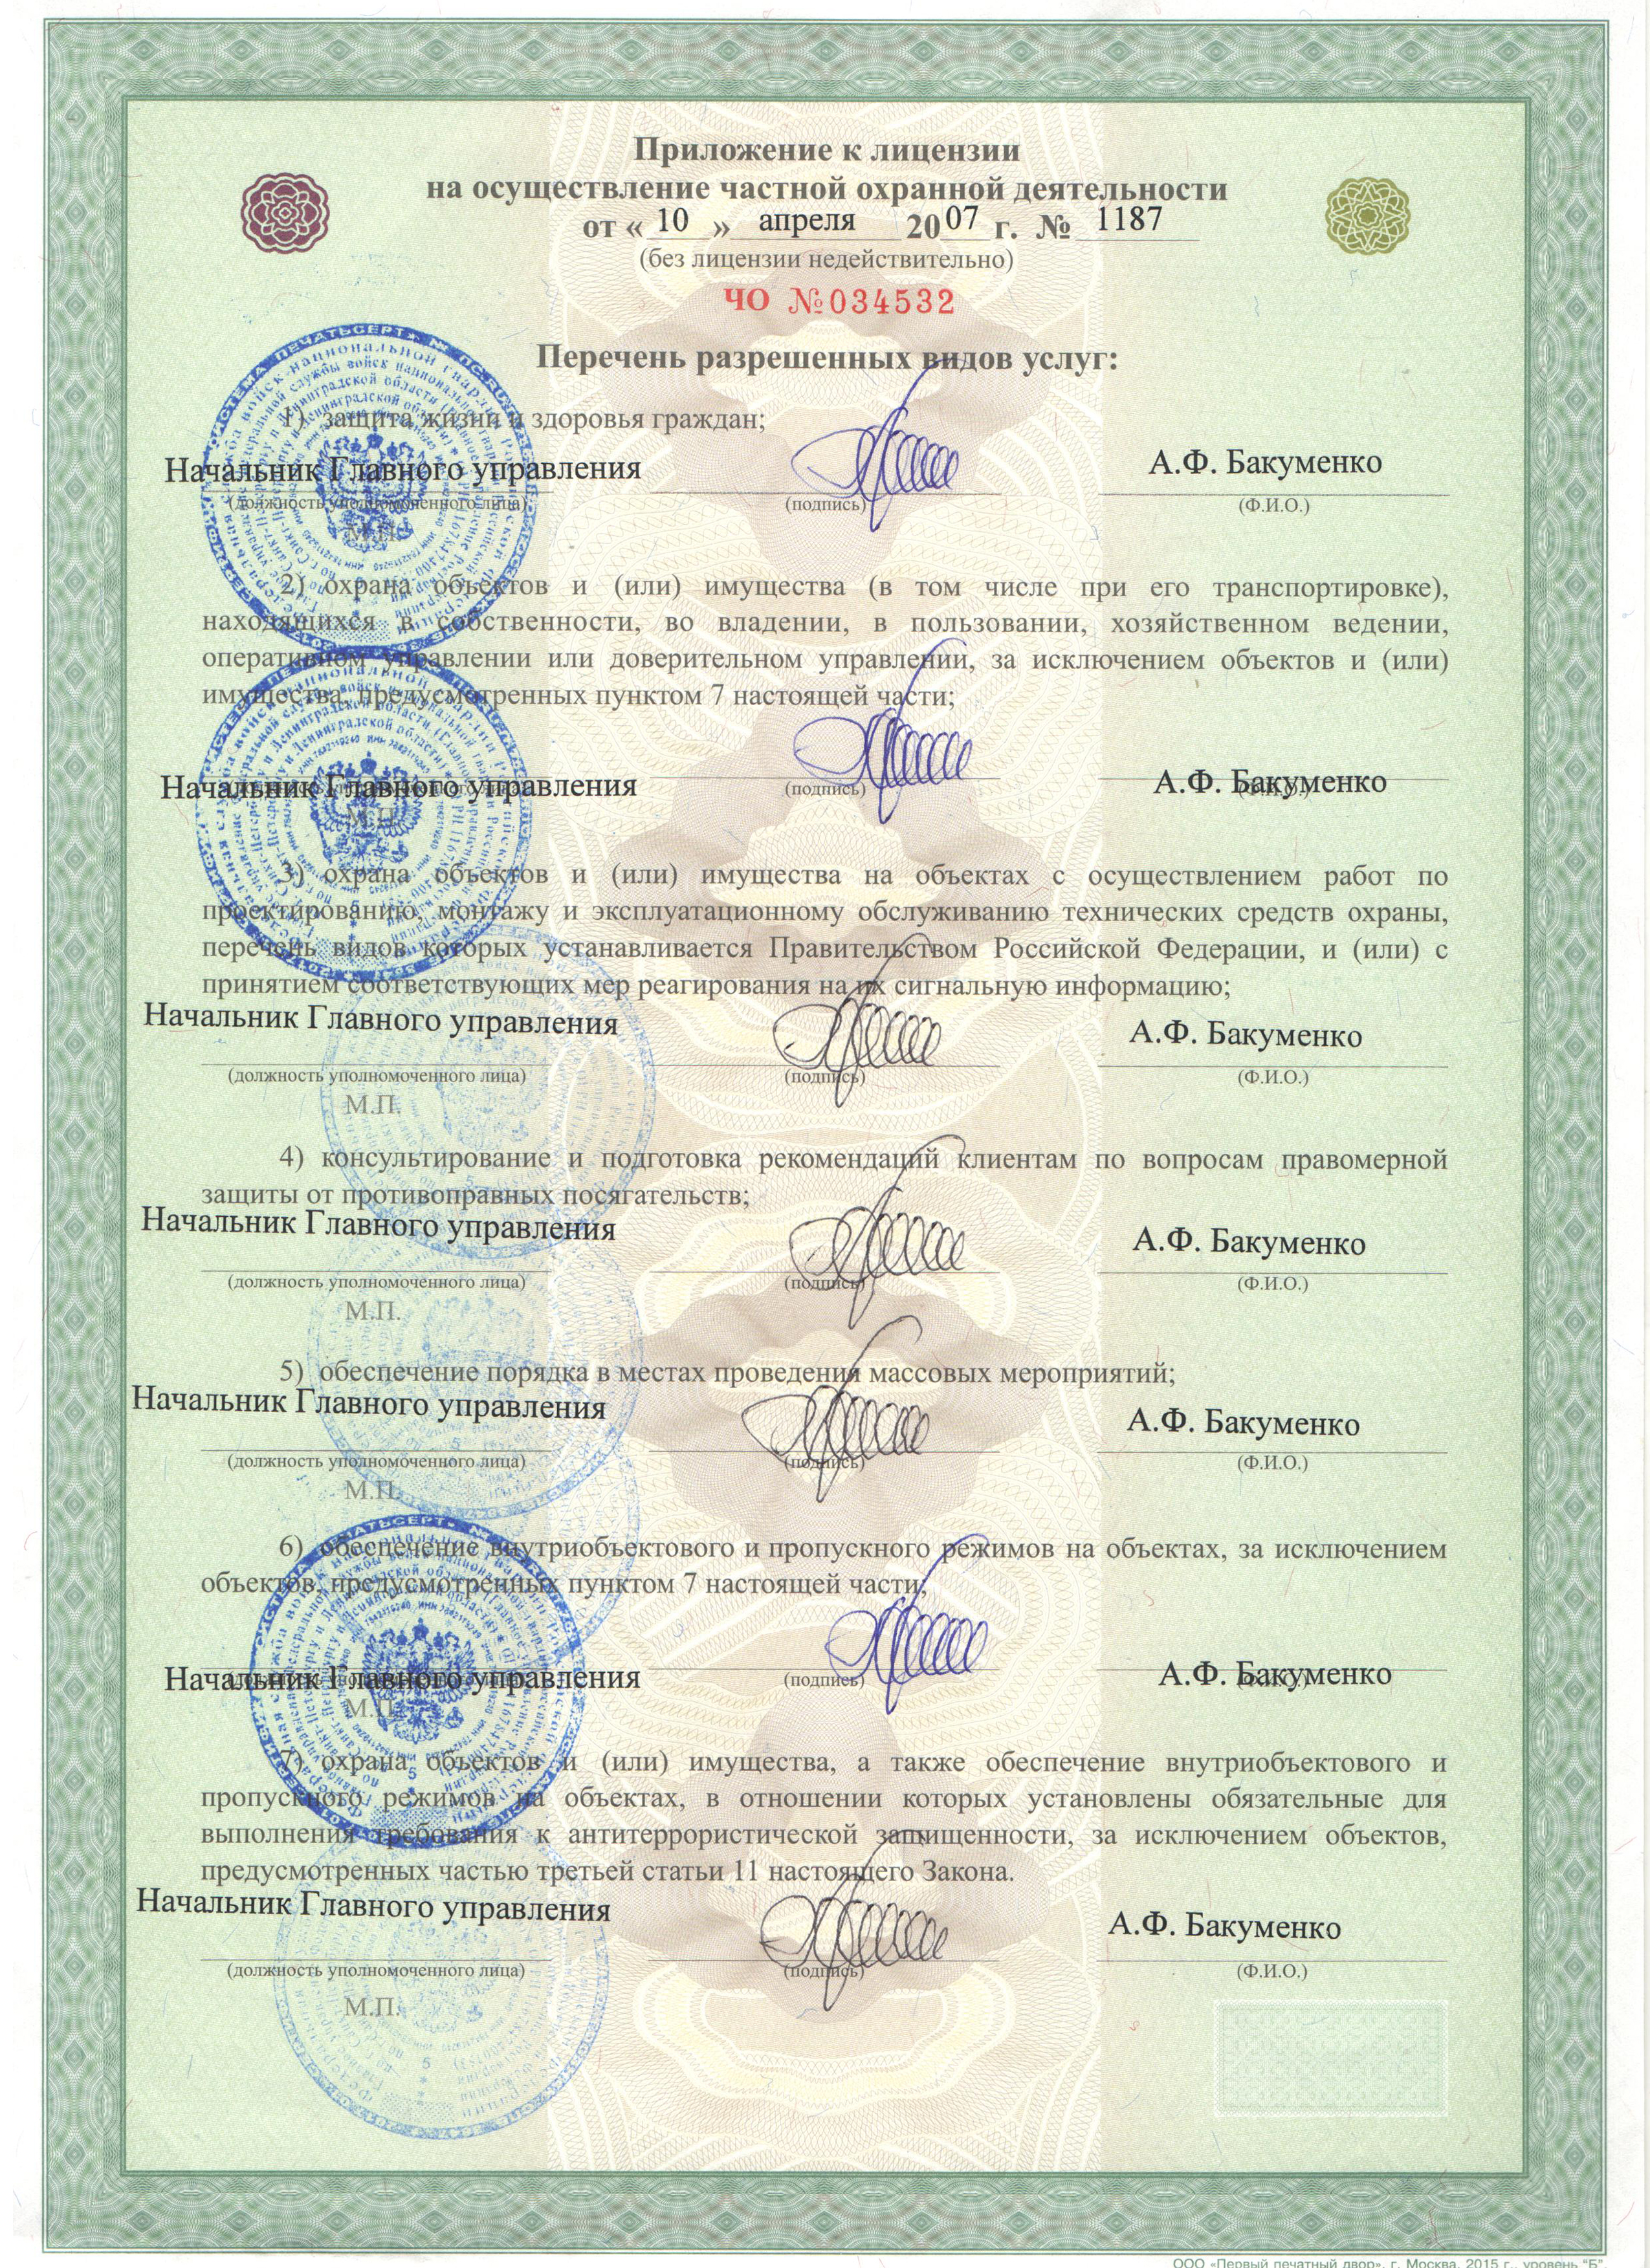 Лицензия на осуществление частной охранной деятельности по г. Санкт-Петербургу и Ленинградской области